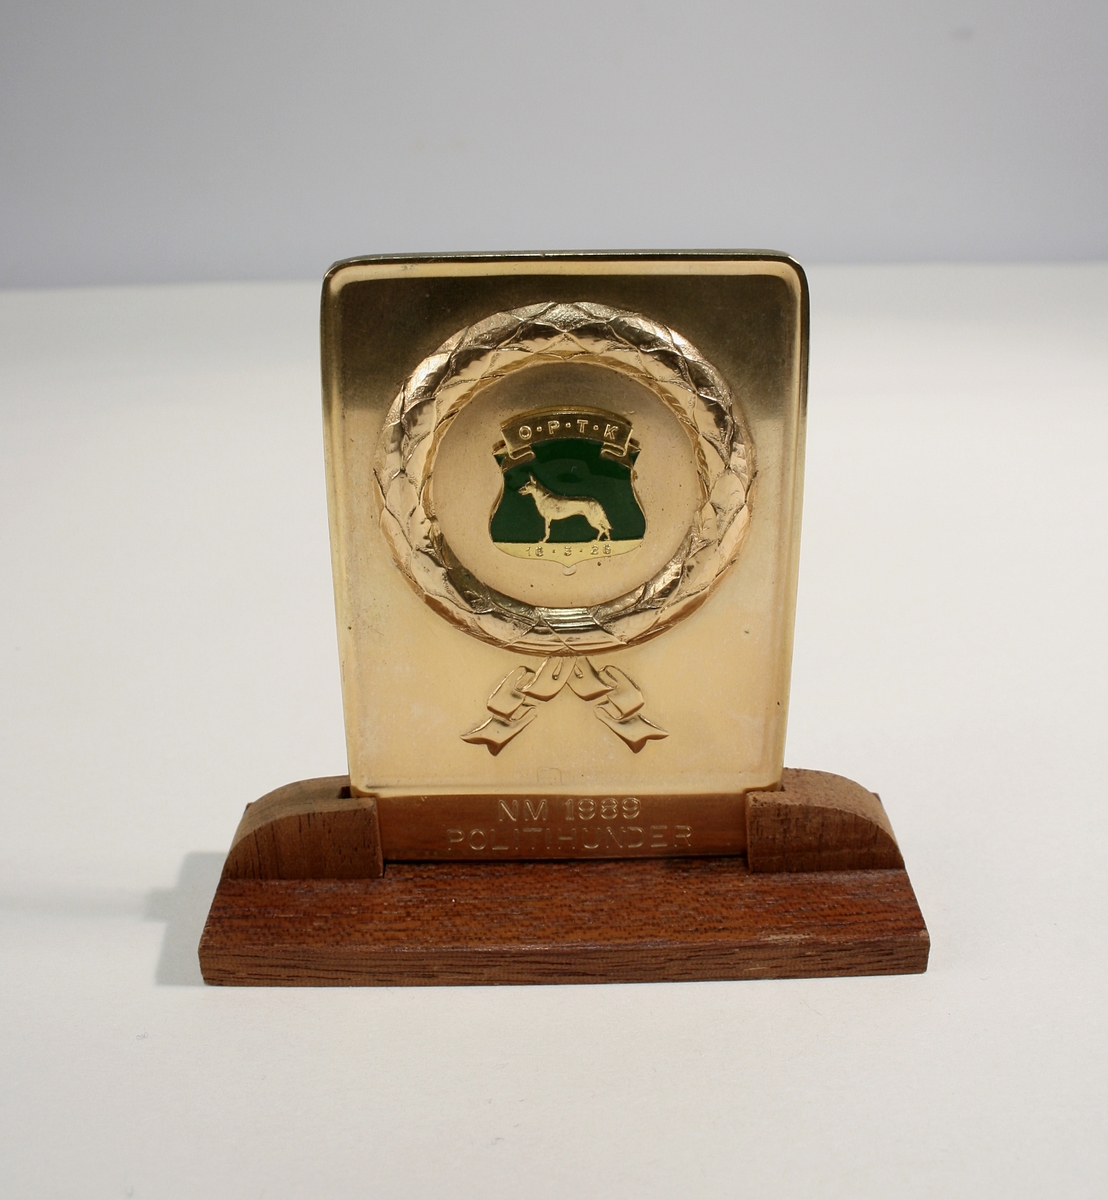 En metallplakett på tresokkel, et sølvfat, to knapper. Eske fra sølvsmed Knut Larsen, merket "Politihunden Giell"